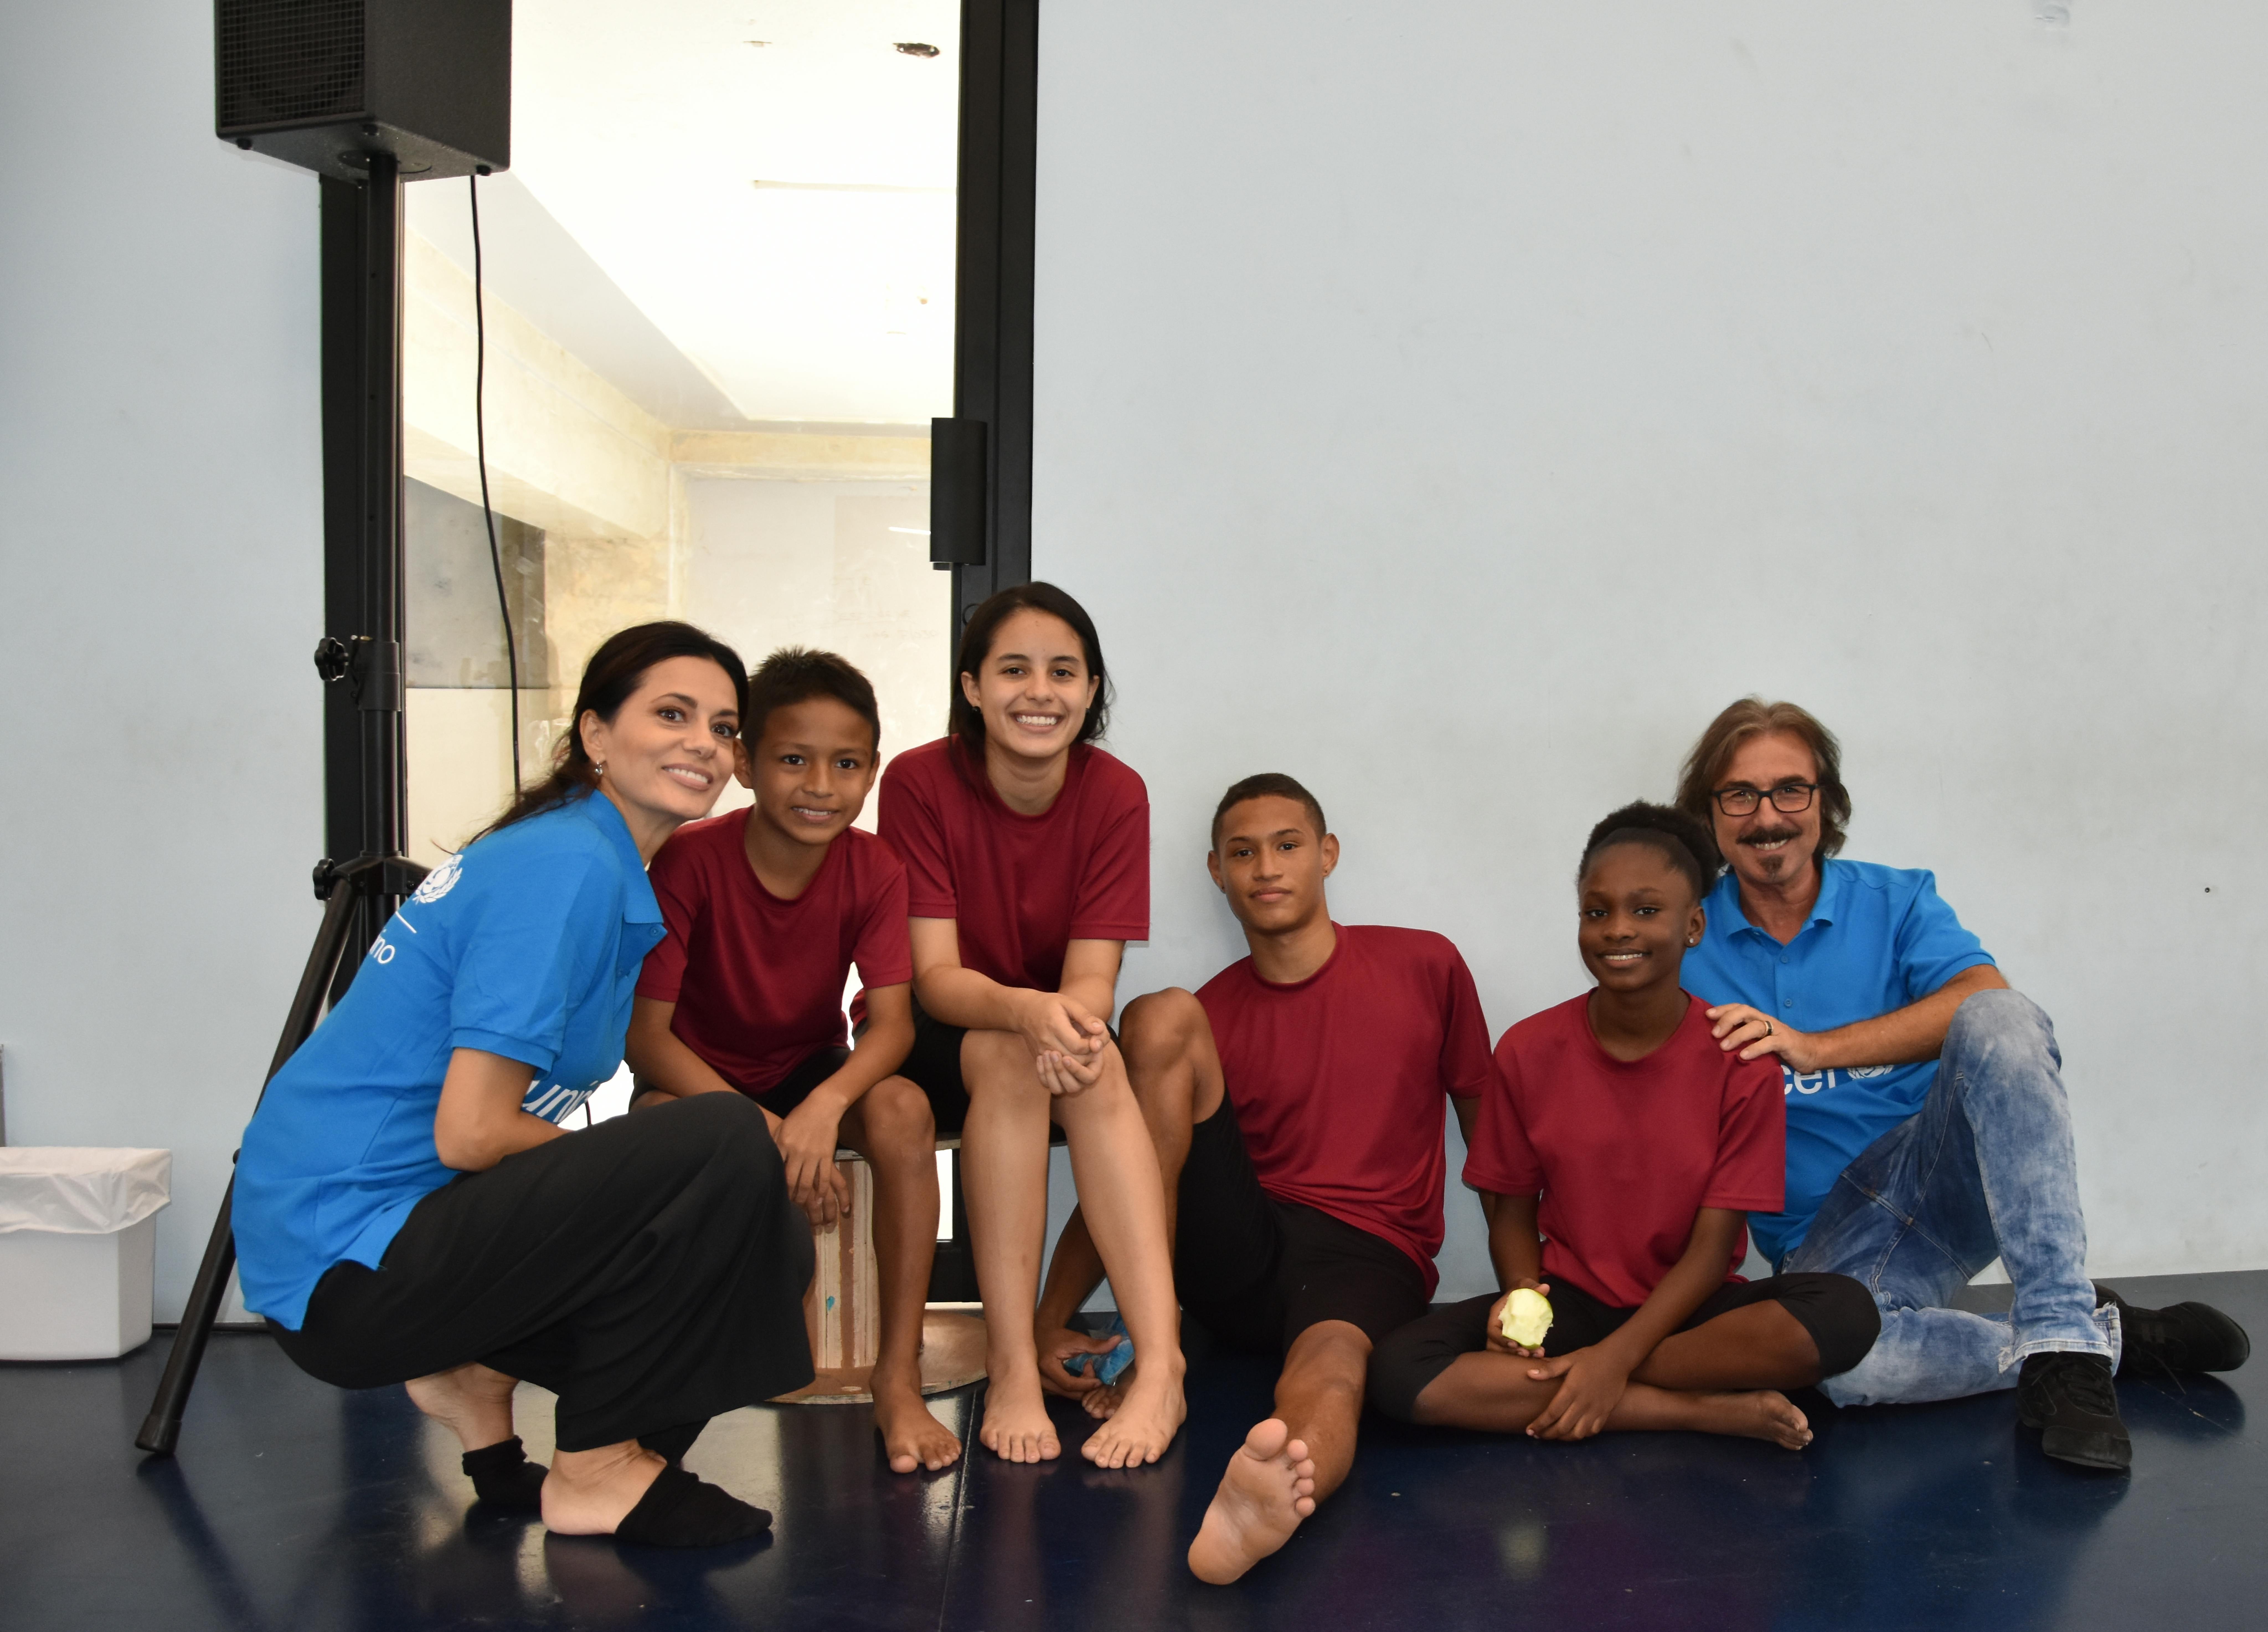 Rossella Brescia e Luciano Cannito, in missione con UNICEF a Panama, visitano una scuola di danza 